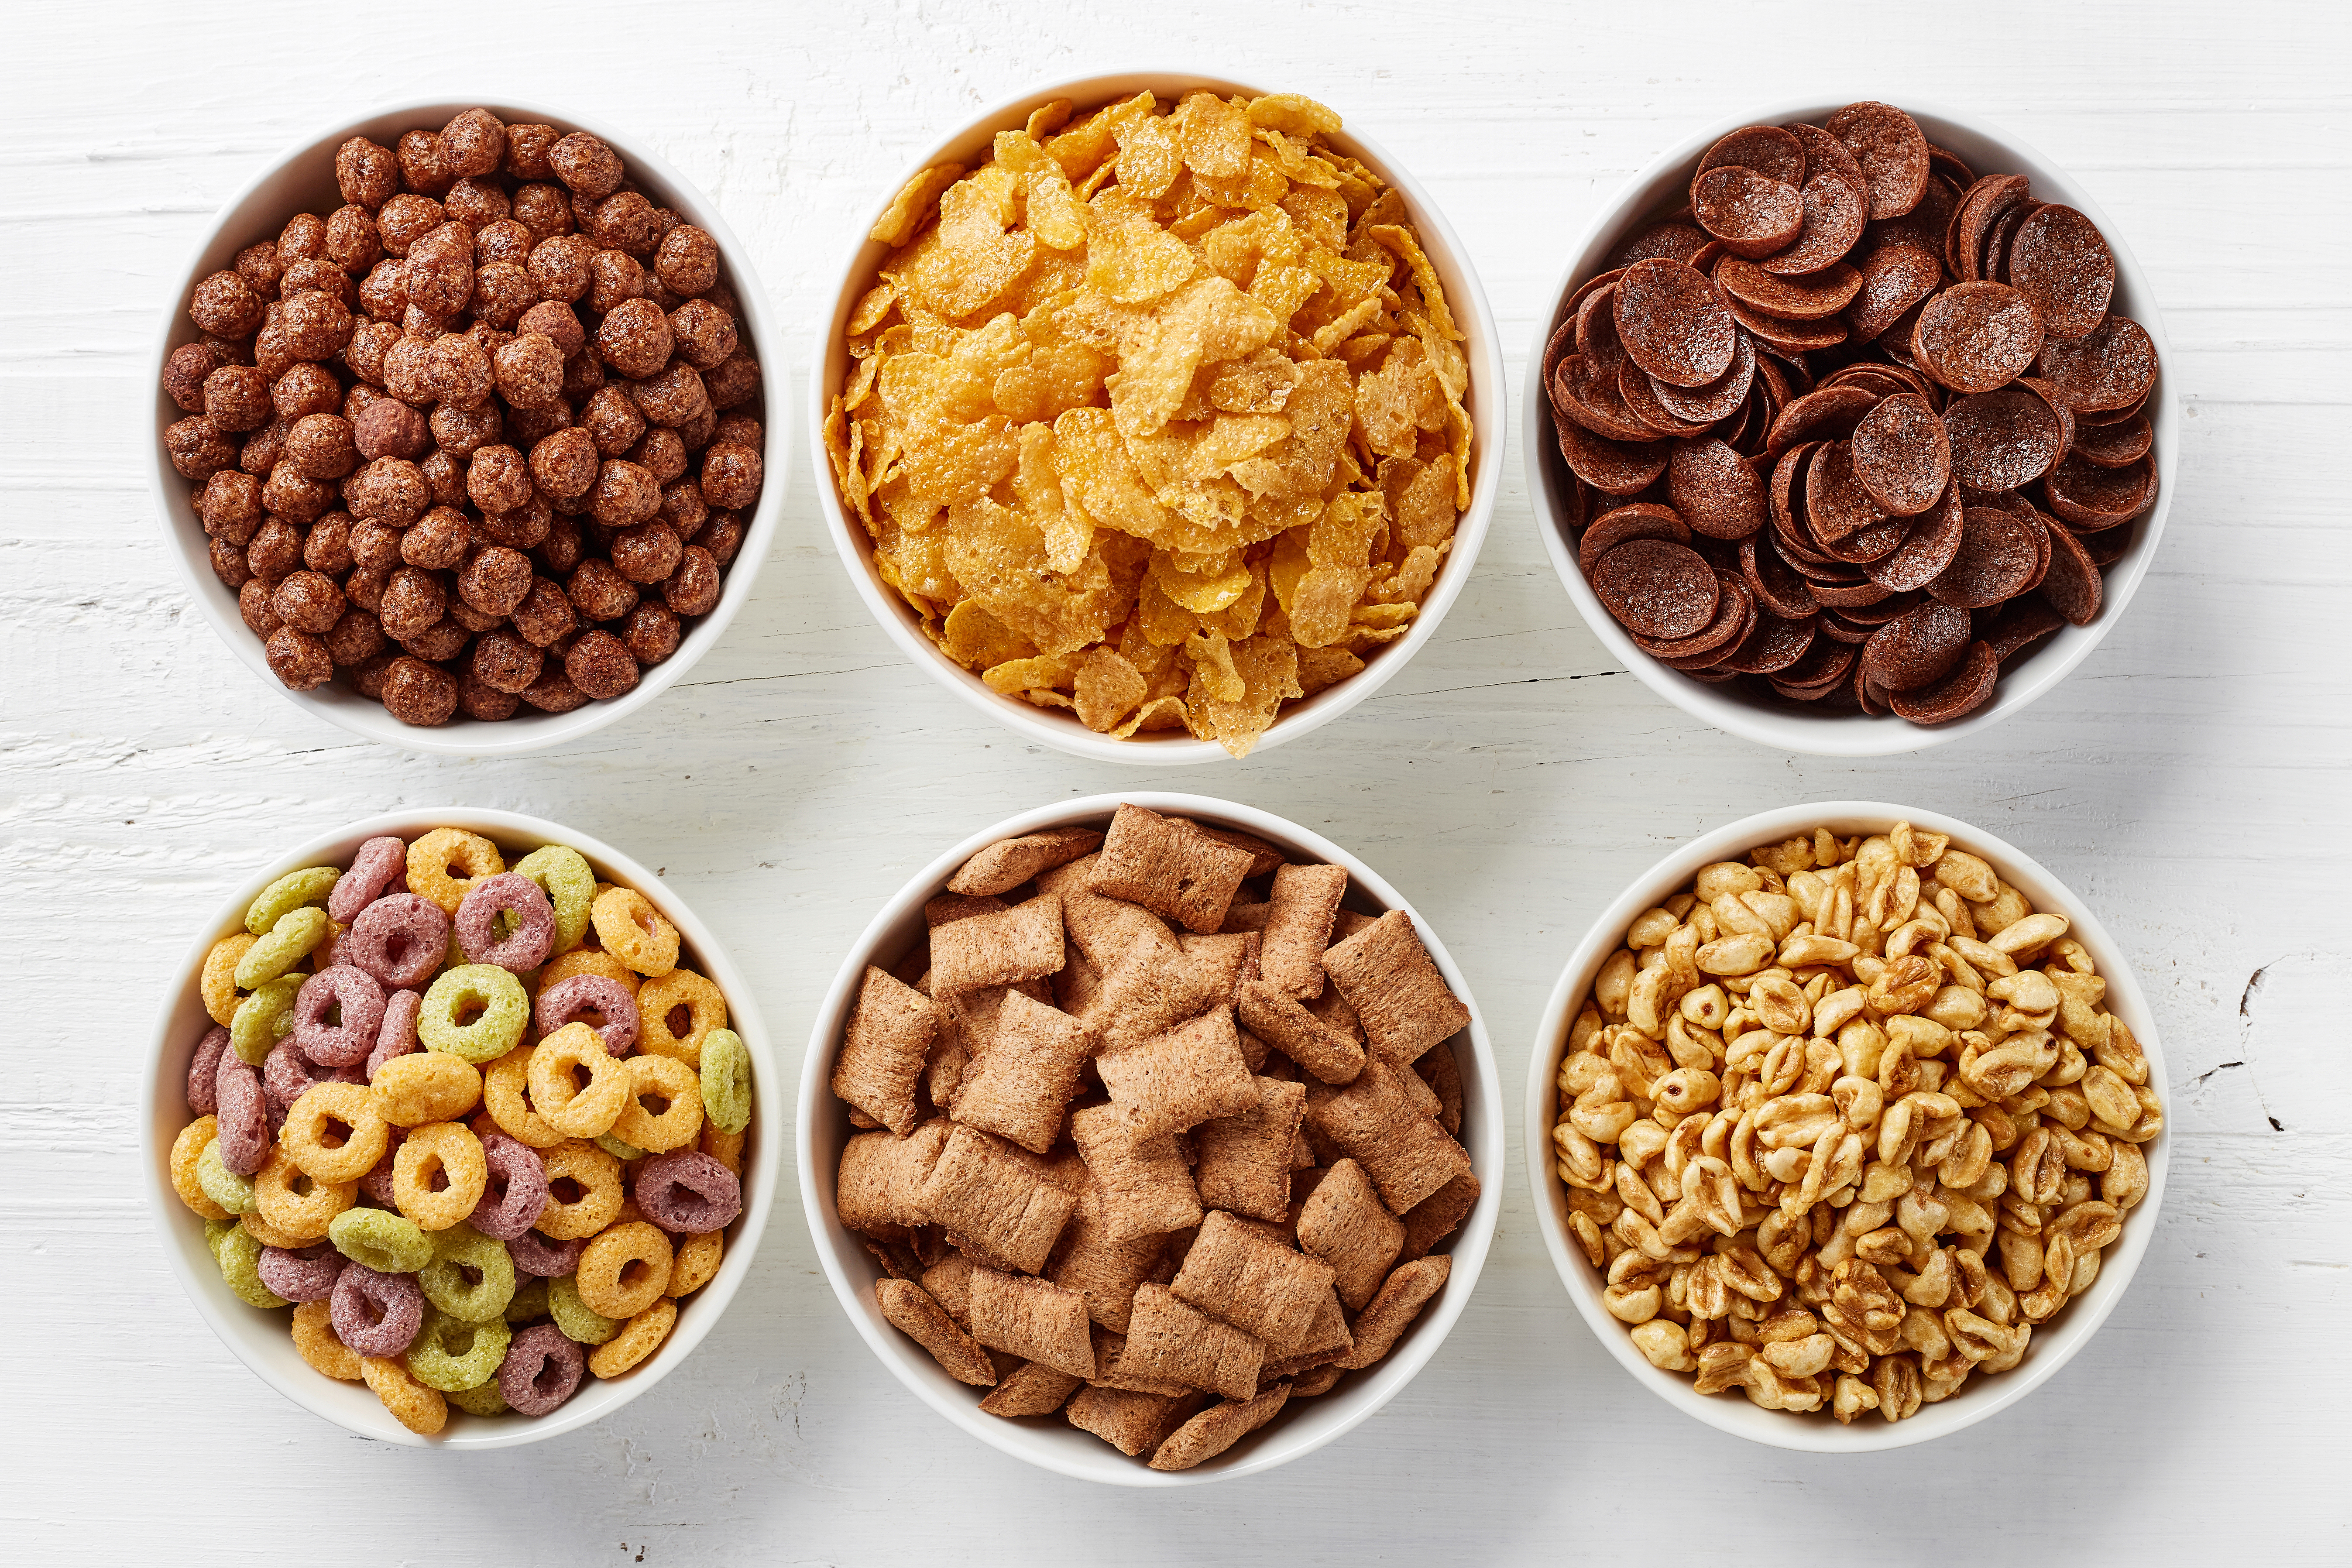 Bowls of breakfast cereals